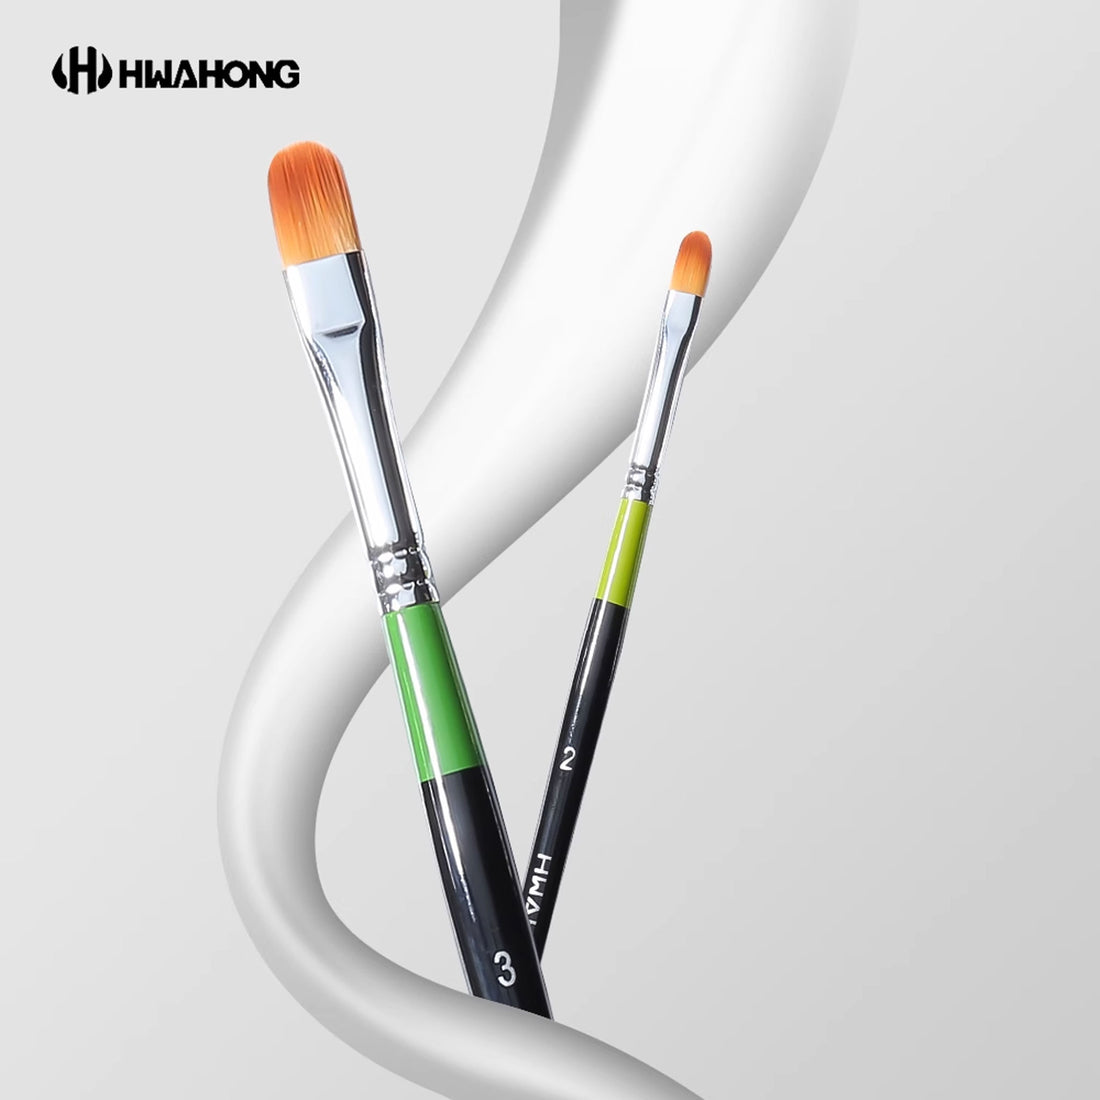 HWAHONG 982 Concealer Brush